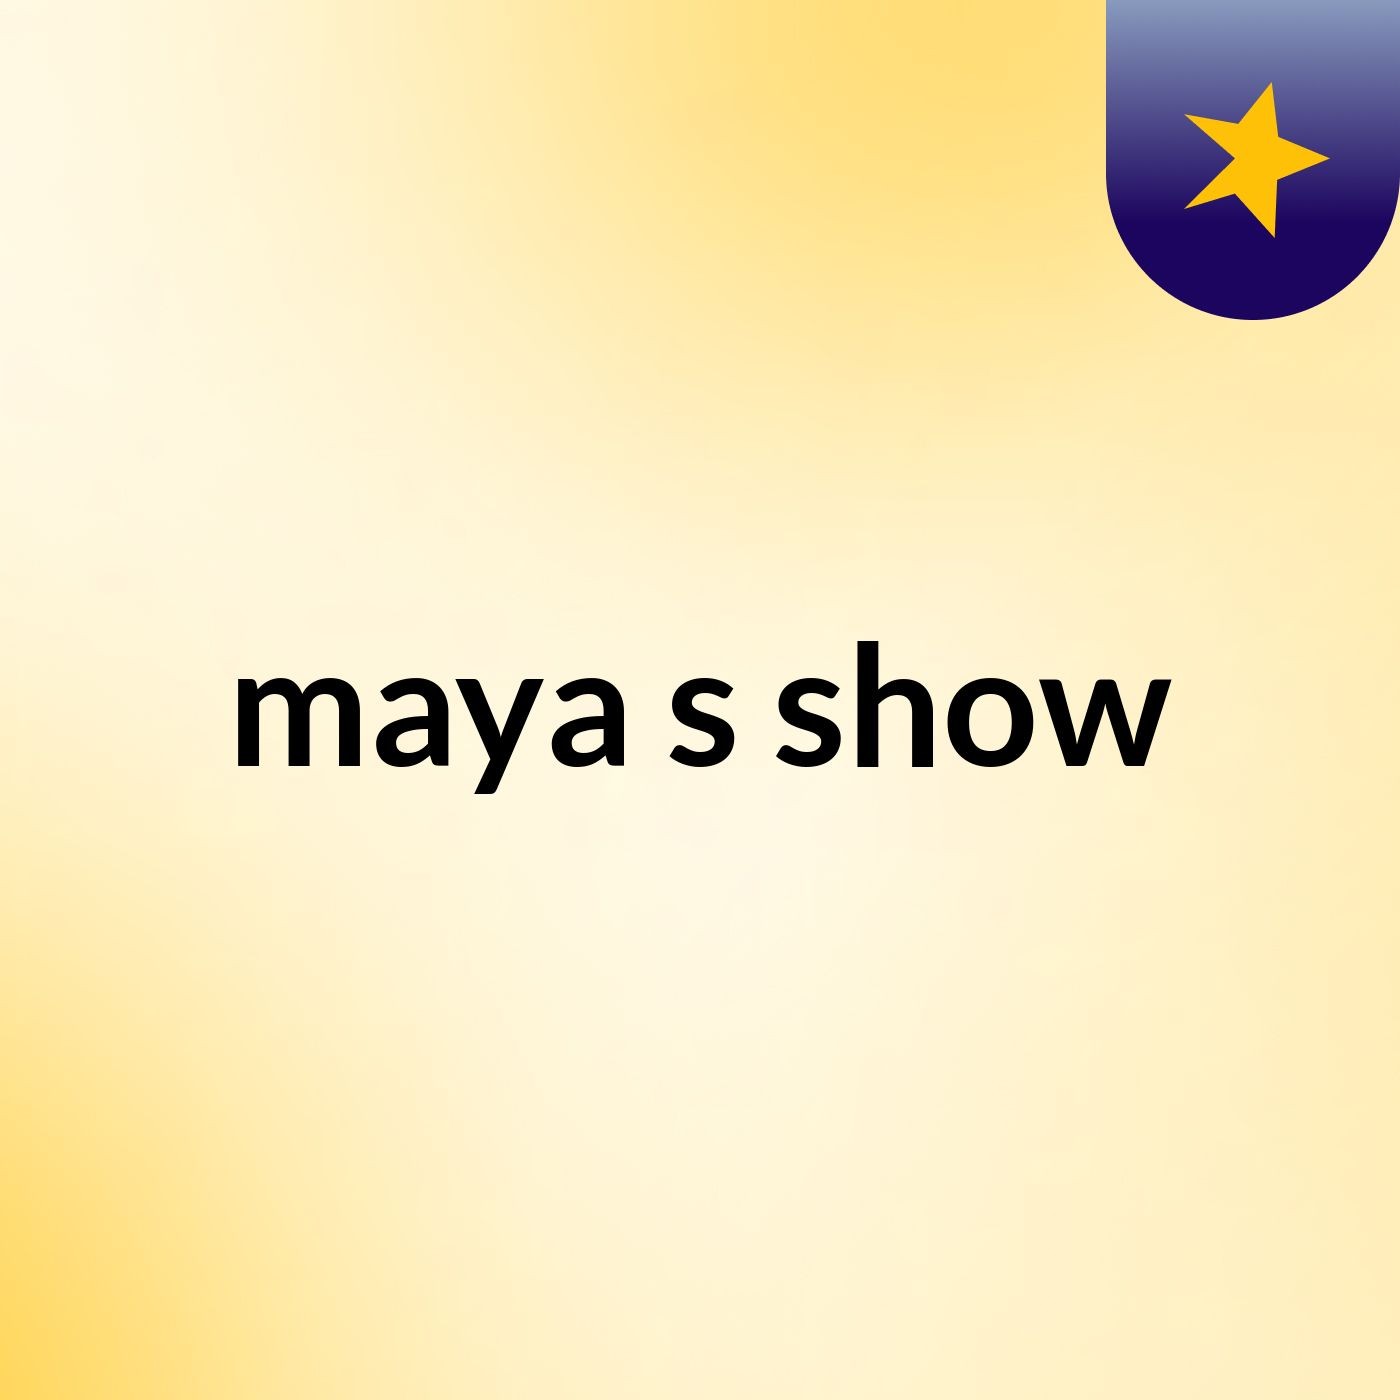 maya's show